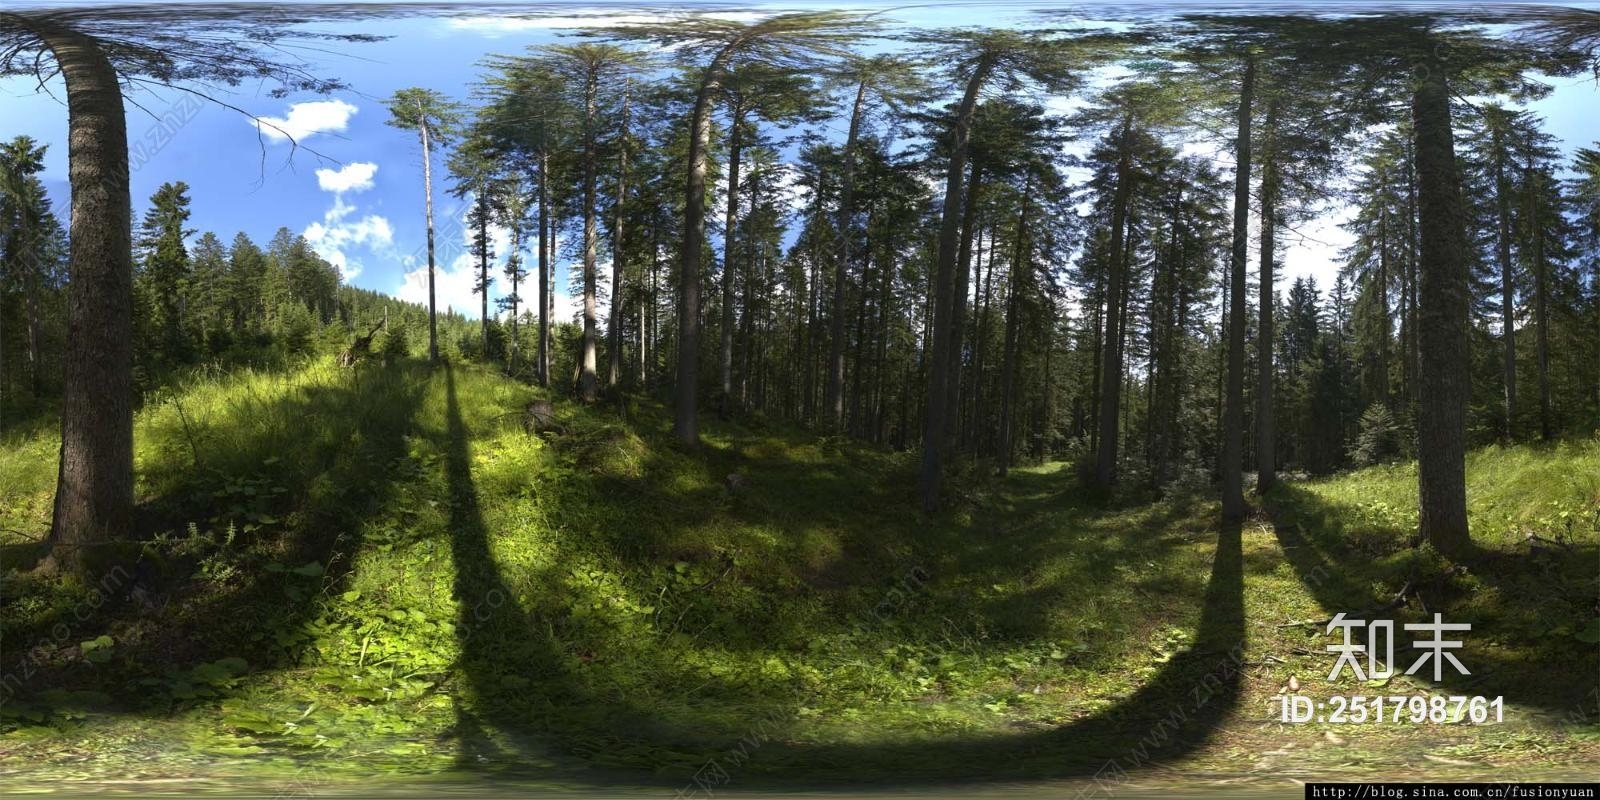 HDRI 360 Forest